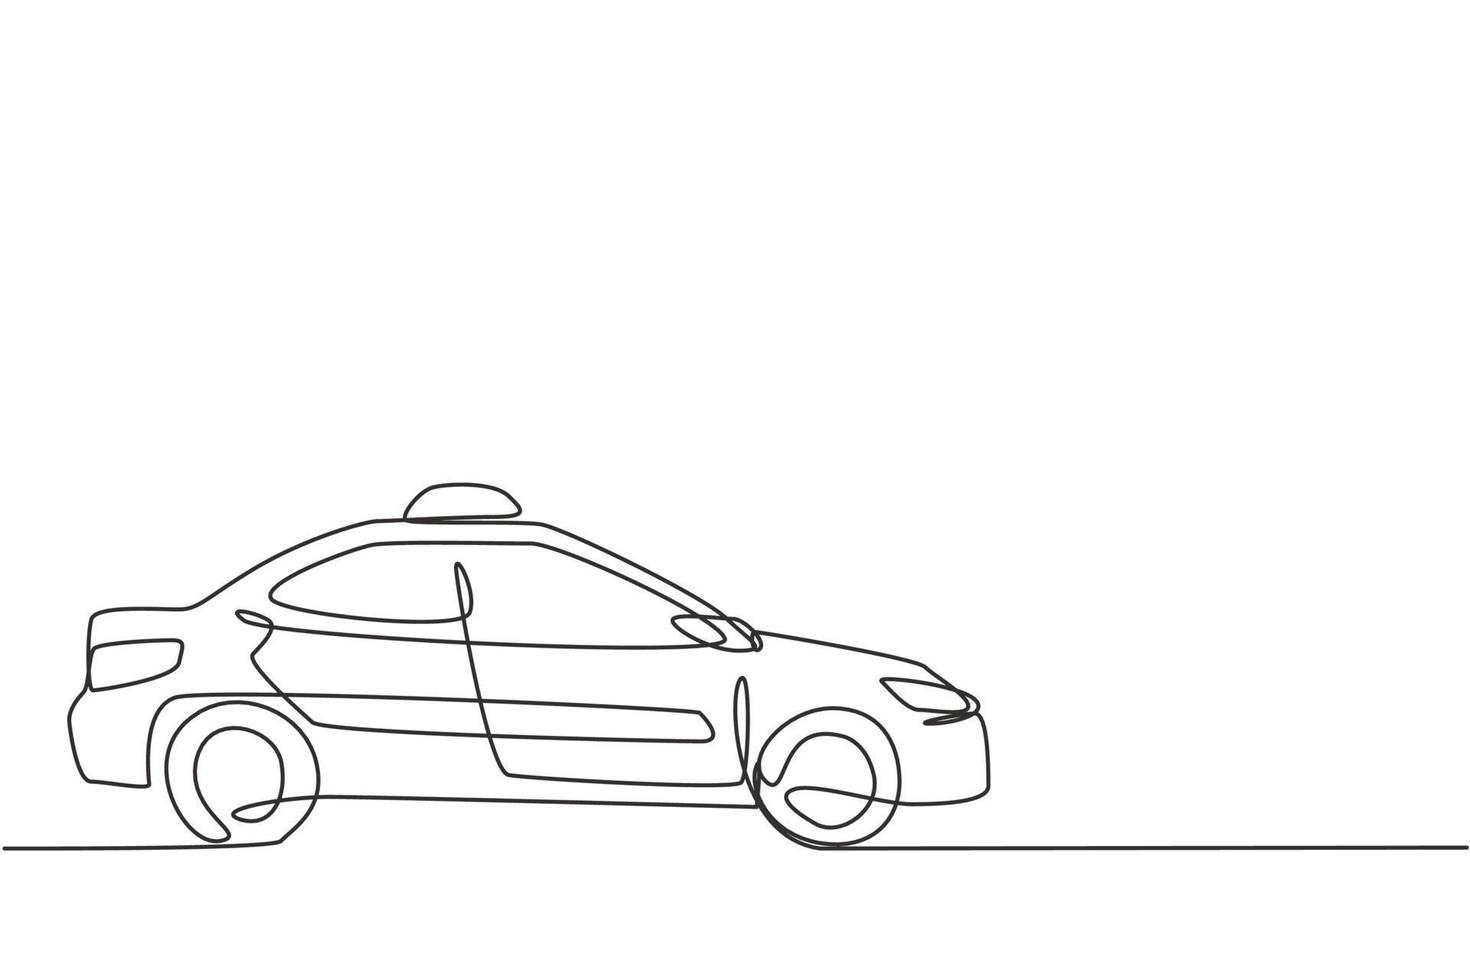 El dibujo de una sola línea del automóvil de taxi moderno más nuevo utiliza un medidor, gps y se puede pedir en línea. avances tecnológicos en el transporte. Ilustración de vector gráfico de diseño de dibujo de línea continua.